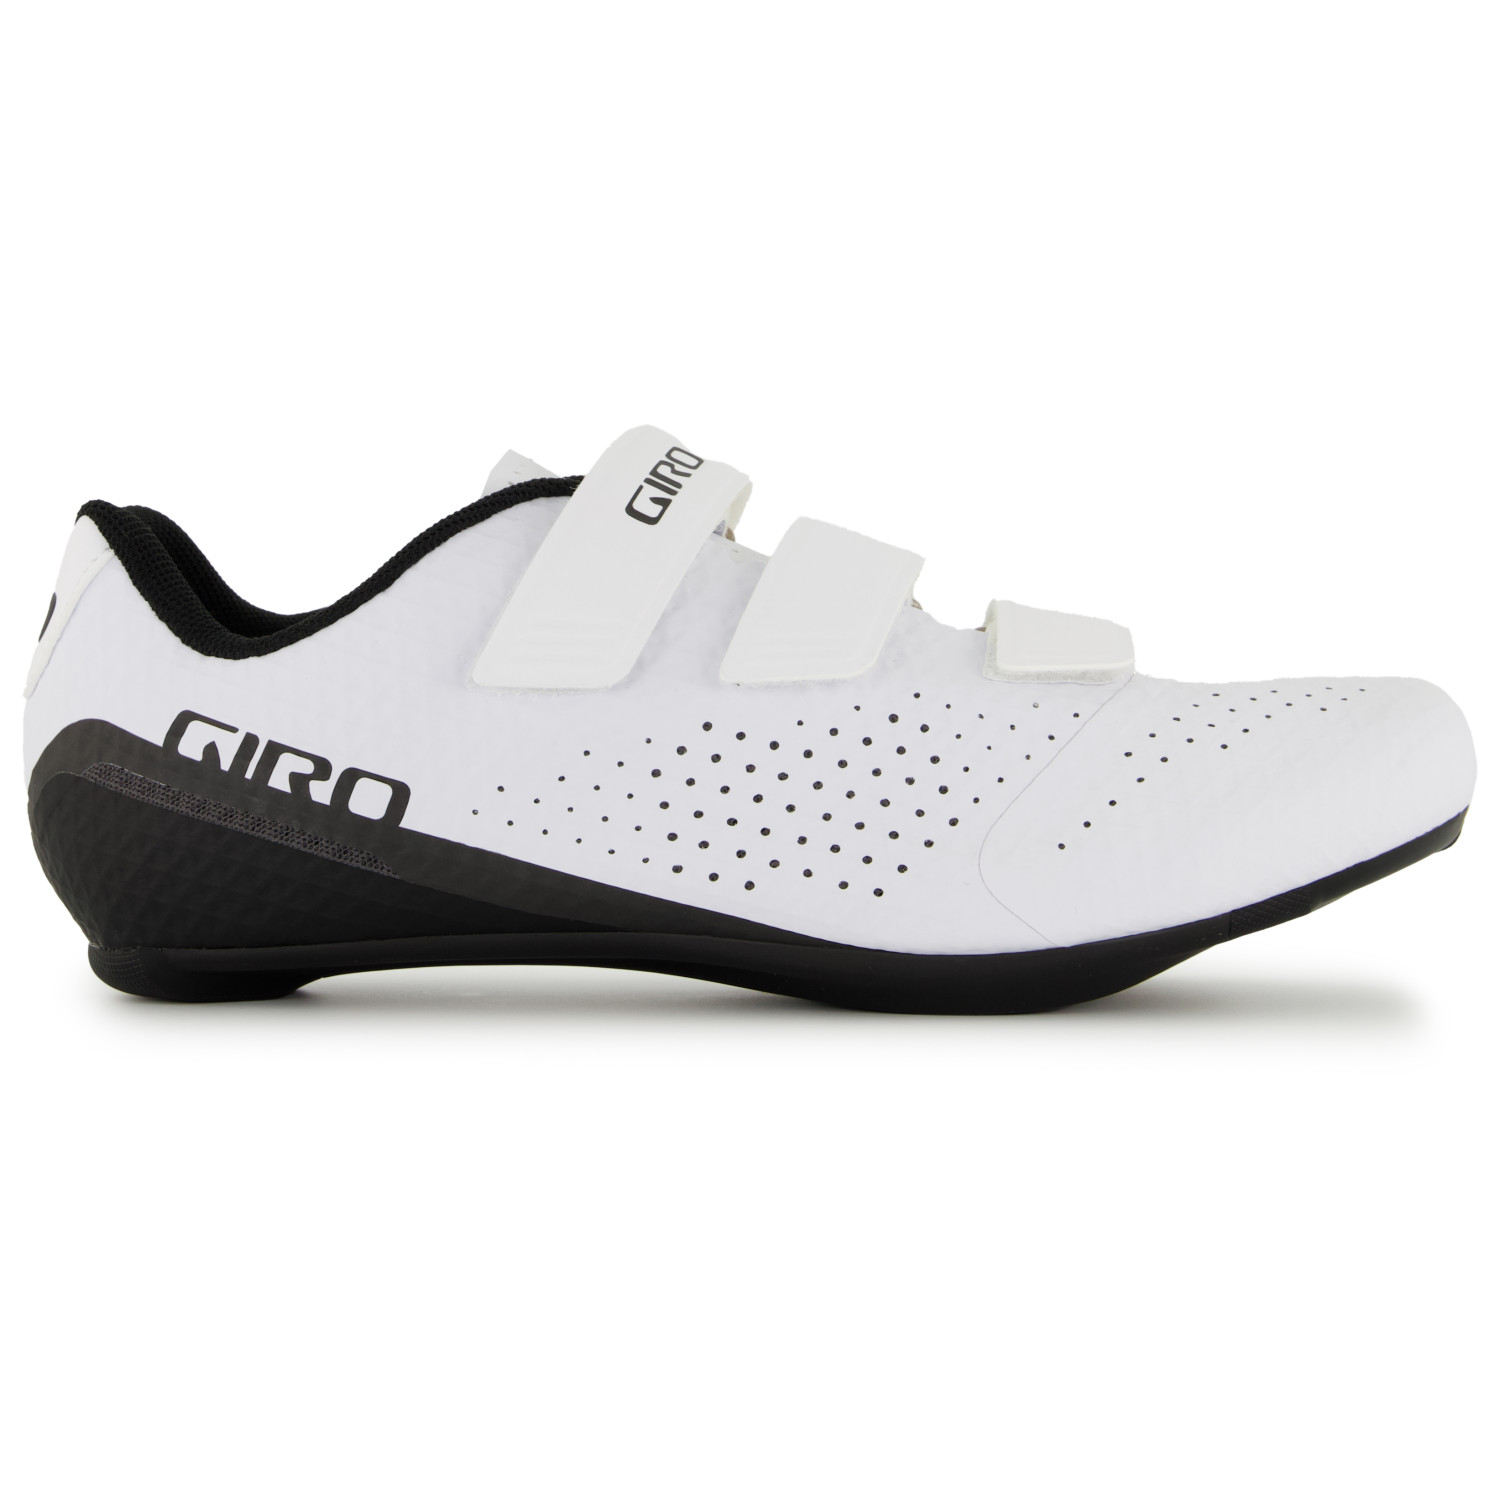 Велосипедная обувь Giro Giro Stylus, белый